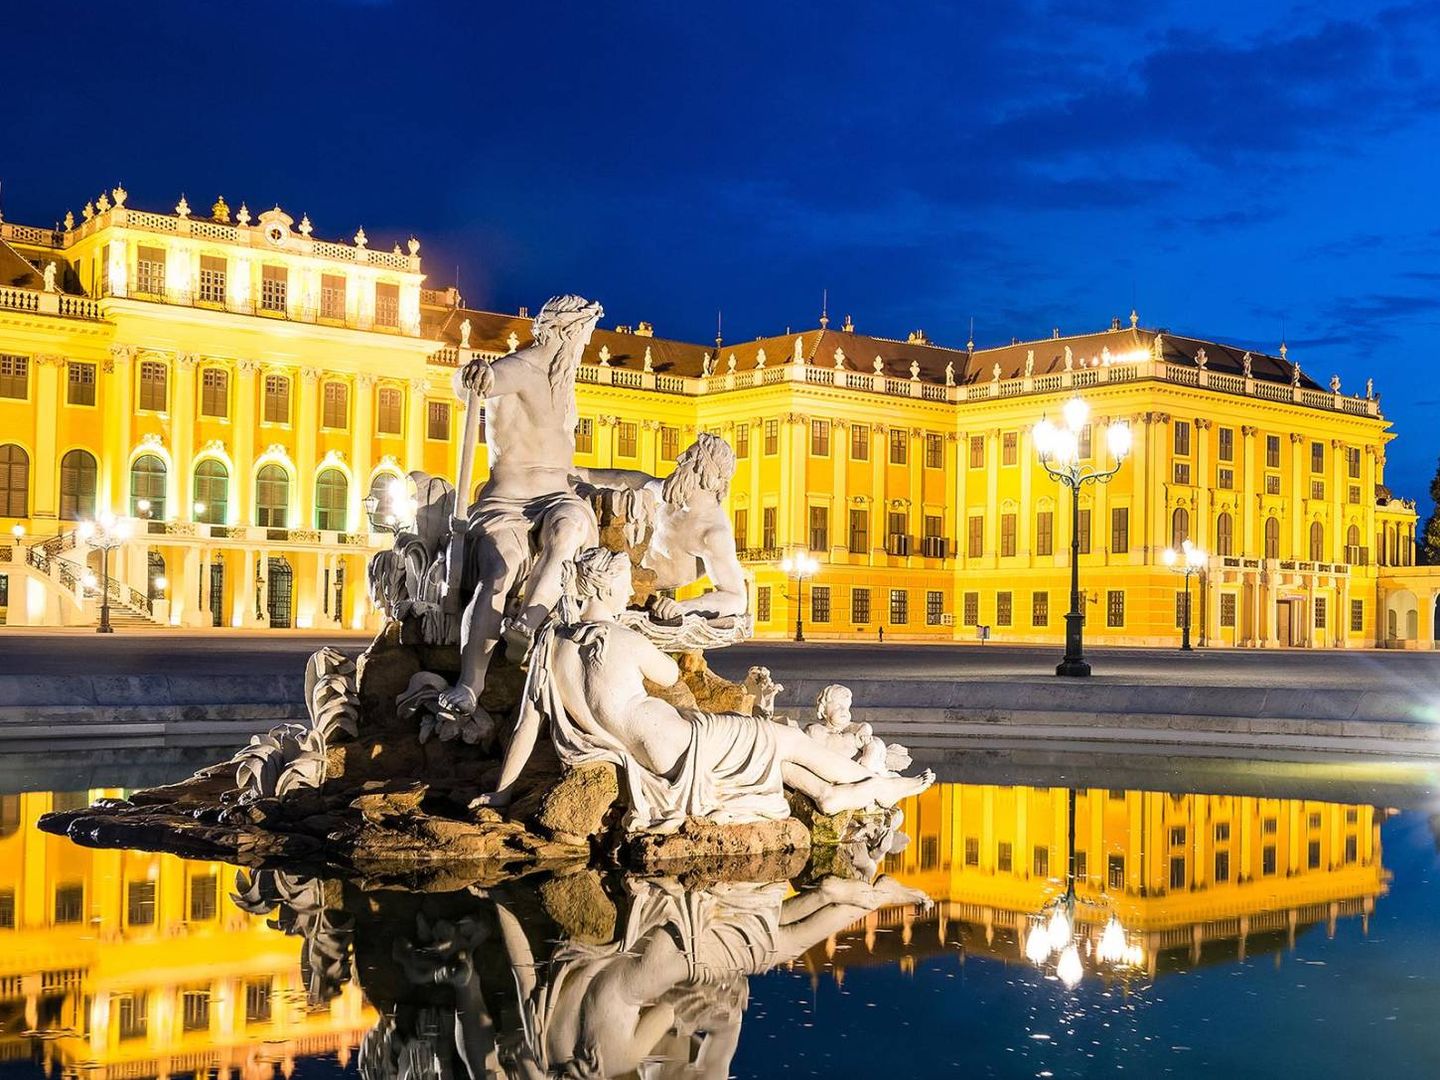 El palacio de Schönbrunn, en Viena. (Shutterstock)